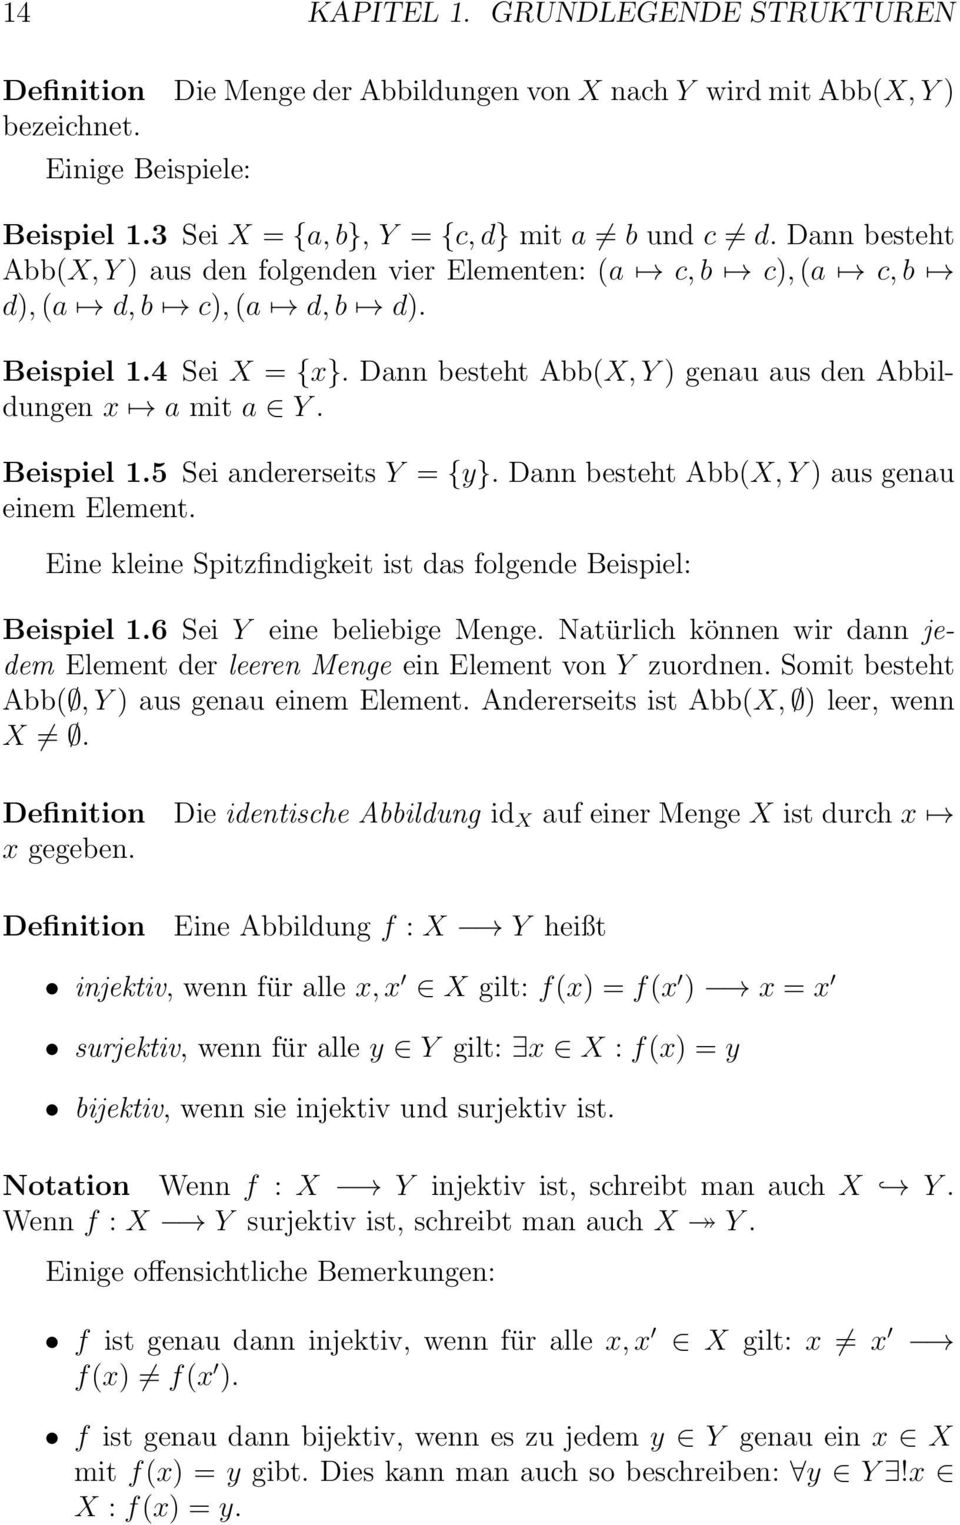 Dann besteht Abb(X, Y) aus genau einem Element. Eine kleine Spitzfindigkeit ist das folgende Beispiel: Beispiel 1.6 Sei Y eine beliebige Menge.